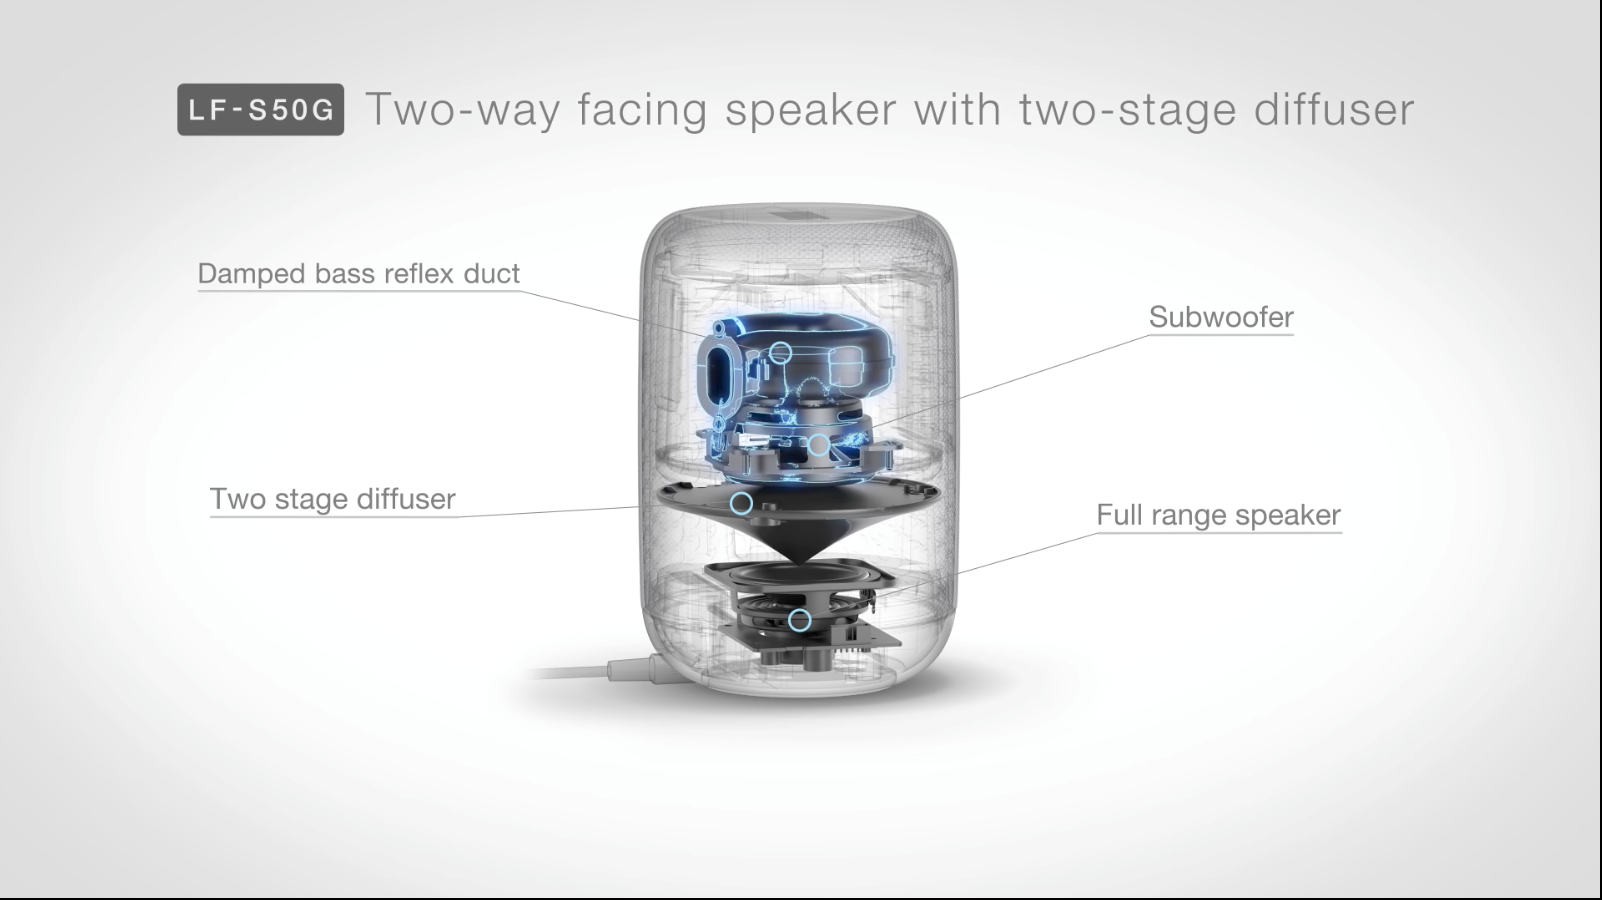 LF-S50G có thiết kế dạng trụ tròn, khá giống loa HomePod của Apple, hiển thị thời gian ẩn phía dưới gọn gàng. Hệ thống âm thanh 360 với bộ khuếch tán kép siêu trầm, thích hợp cho một căn phòng cỡ trung. Giá sản phẩm này dự kiến 200 USD, bán ra vào tháng 10.